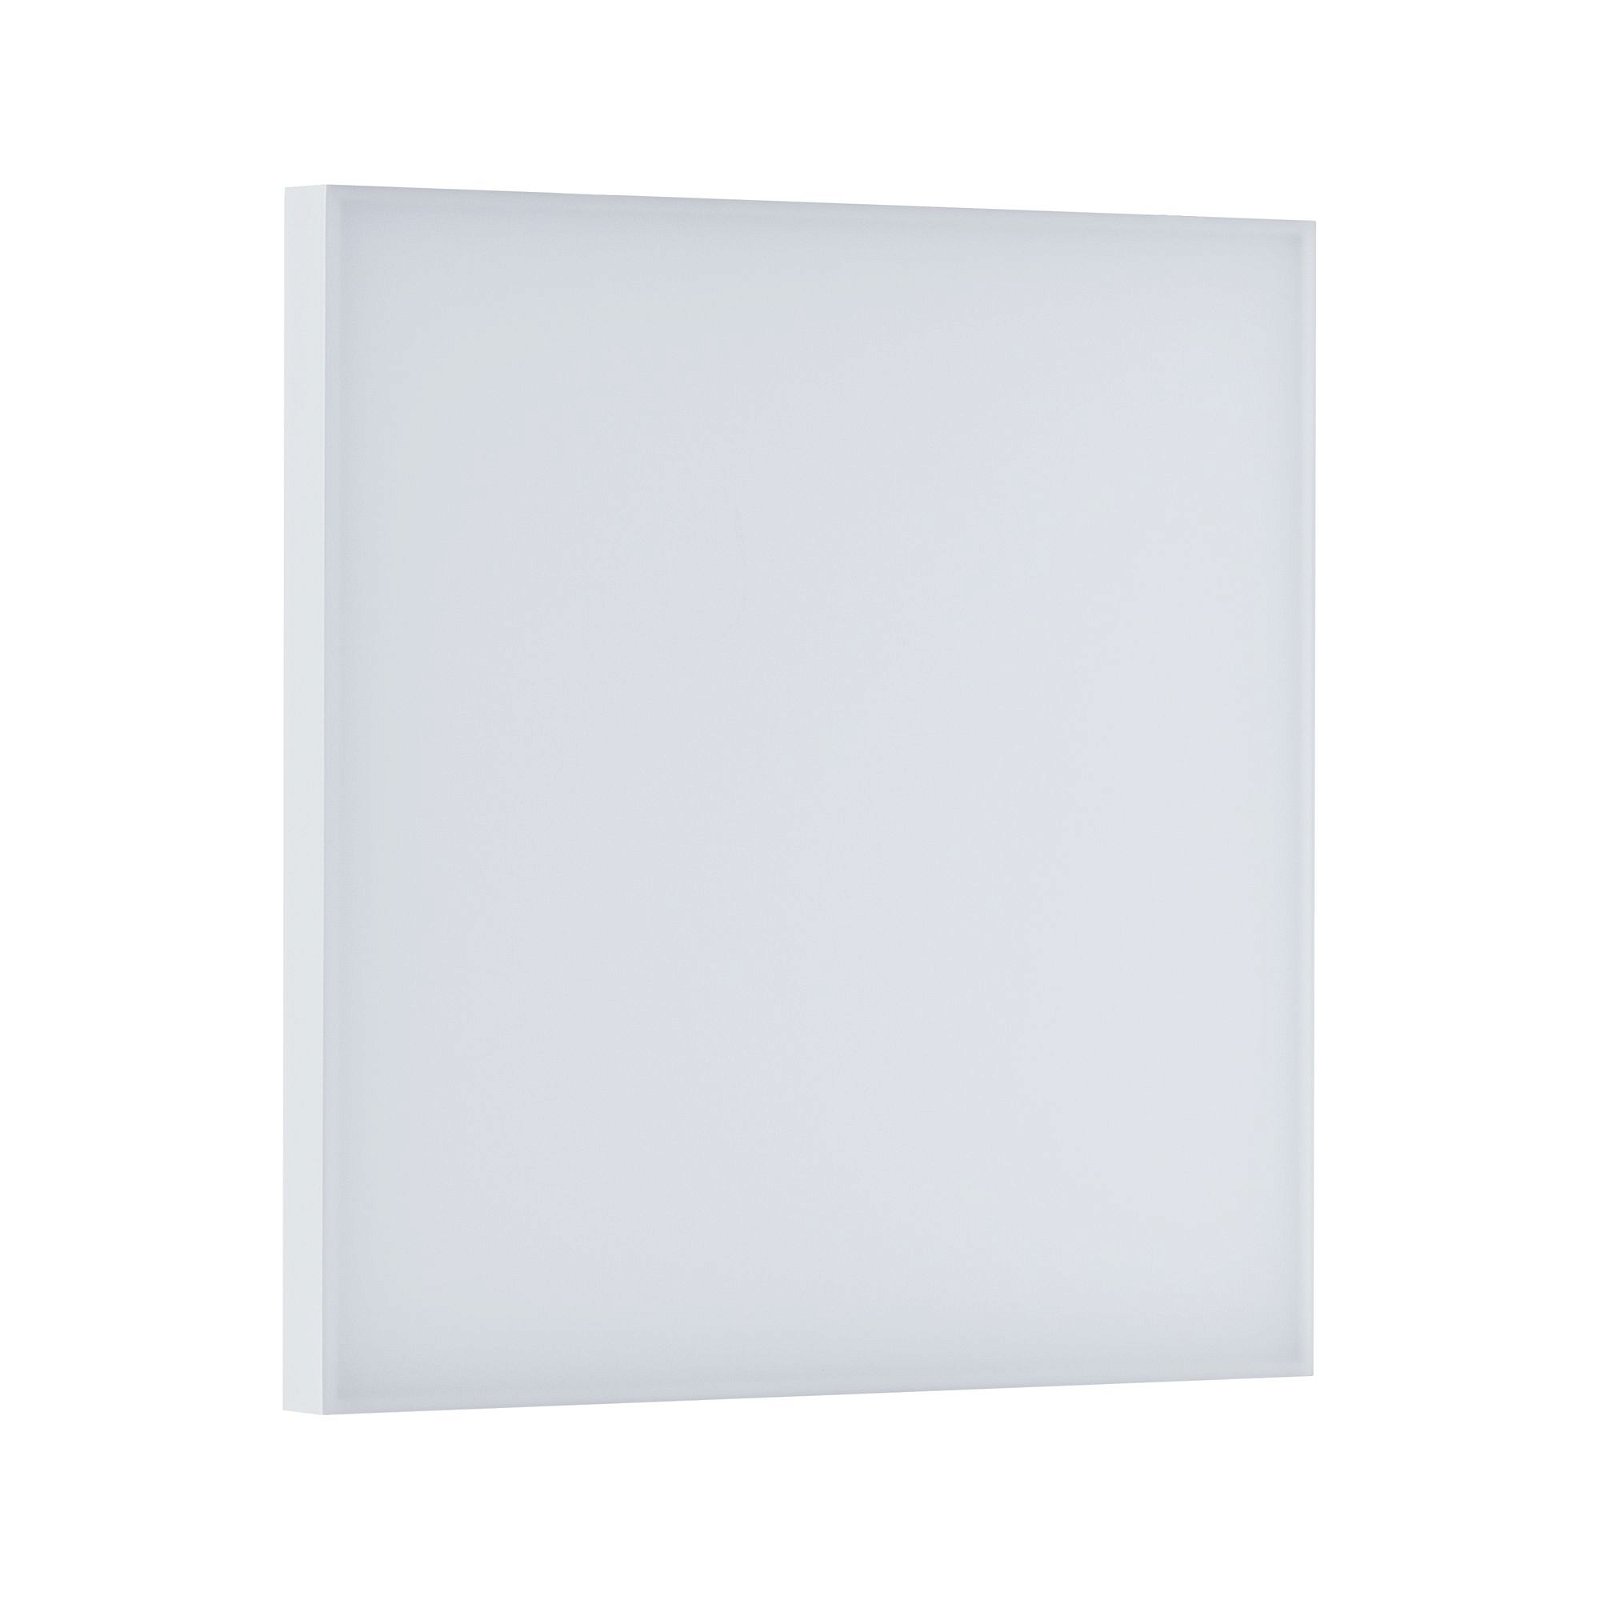 LED-paneel Smart Home Zigbee Velora hoekig 295x295mm 10,5W 1100lm Tunable White Wit mat dimbaar